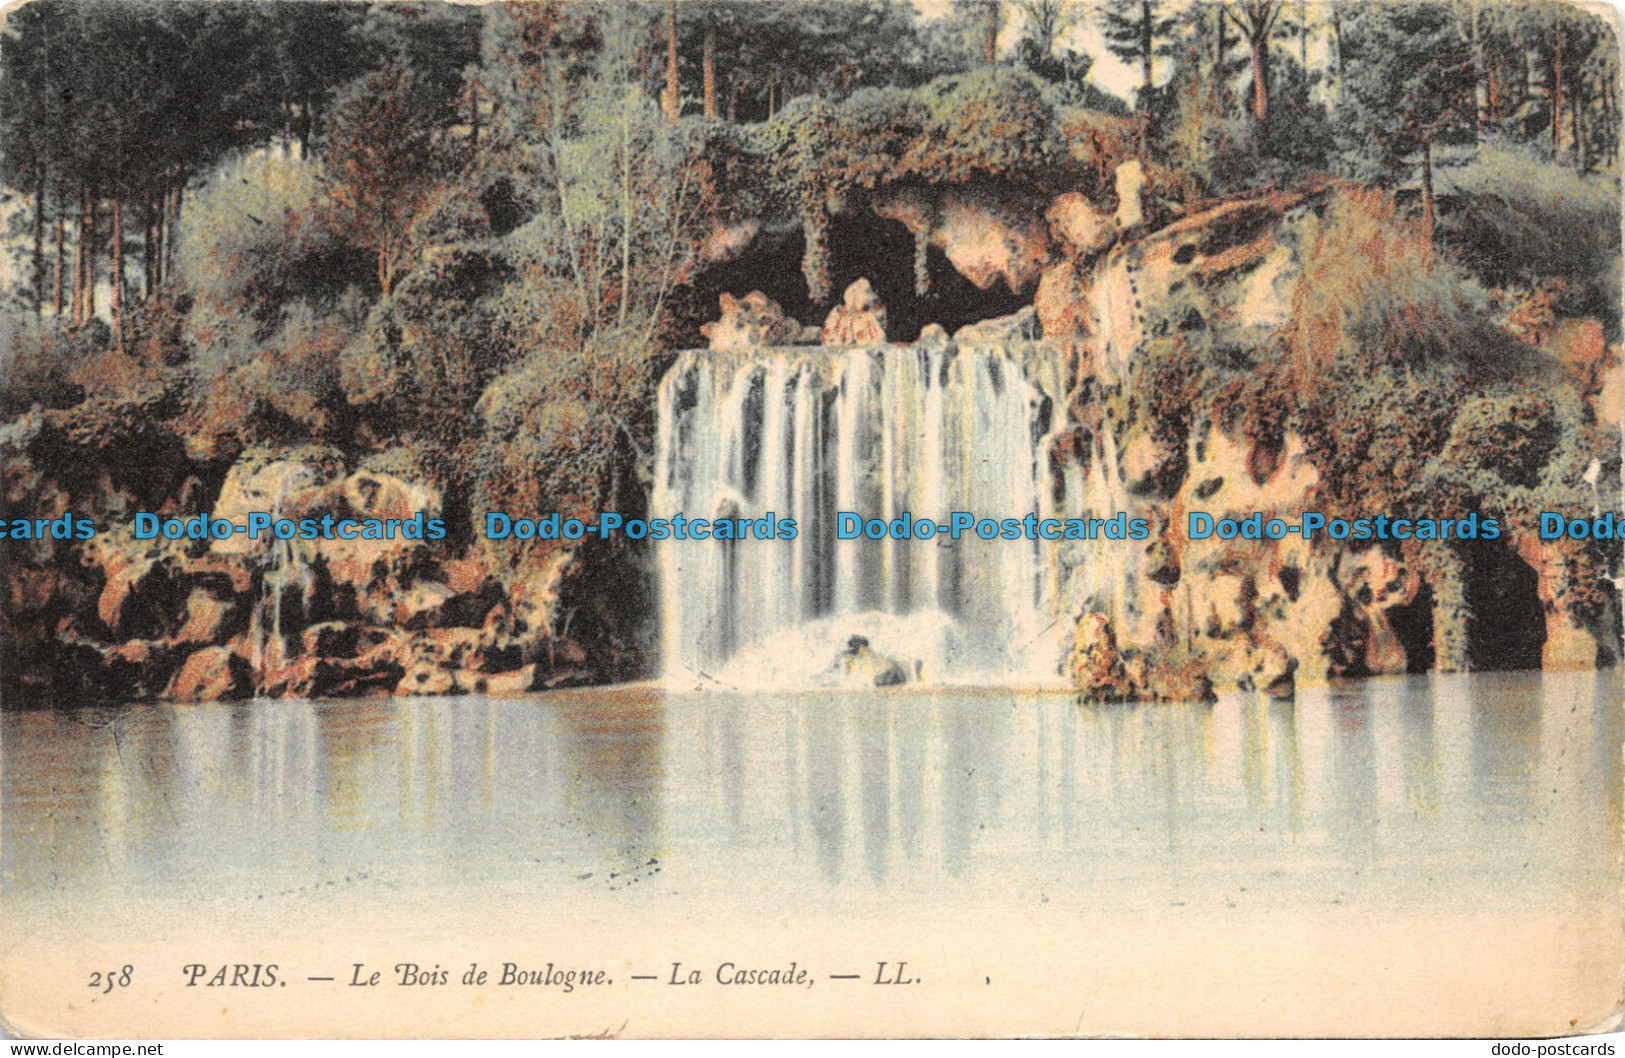 R110282 Paris Le Bois De Boulogne. La Cascade. LL. No 258. B. Hopkins - Monde